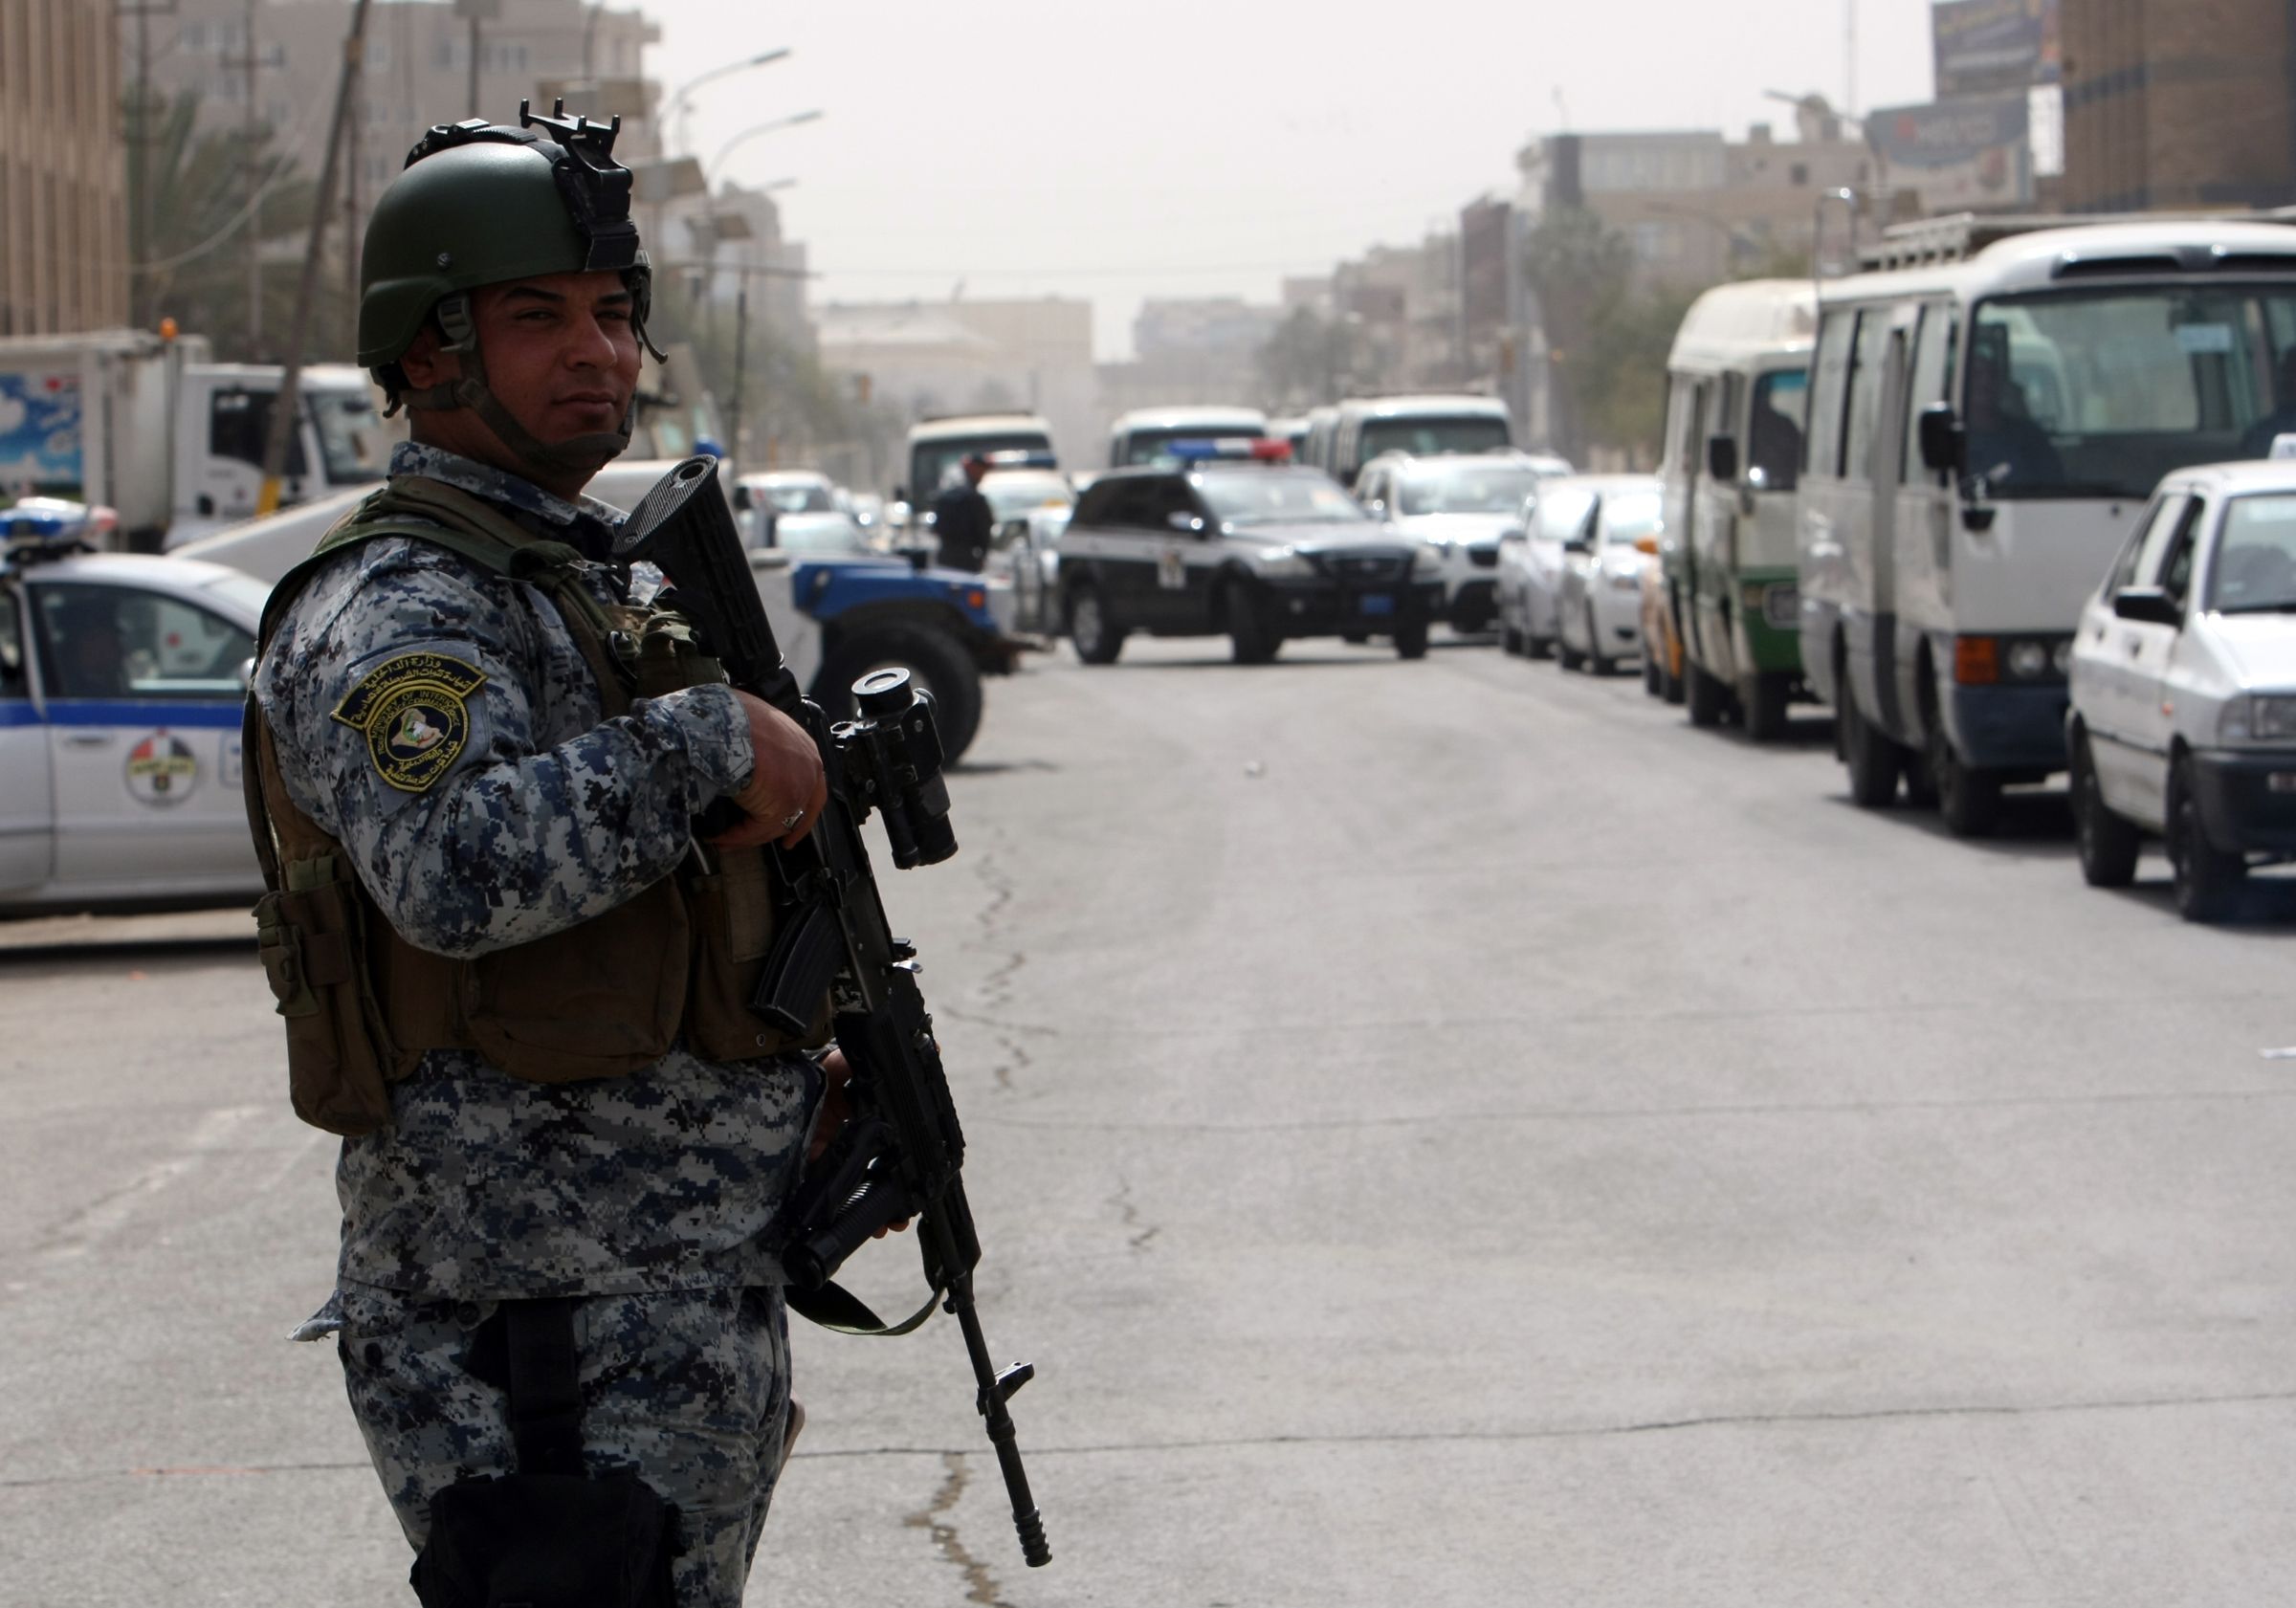 Βαγδάτη: Δολοφονήθηκε ο Ιρακινός ιστορικός ειδικός σε θέματα τζιχαντιστικών οργανώσεων